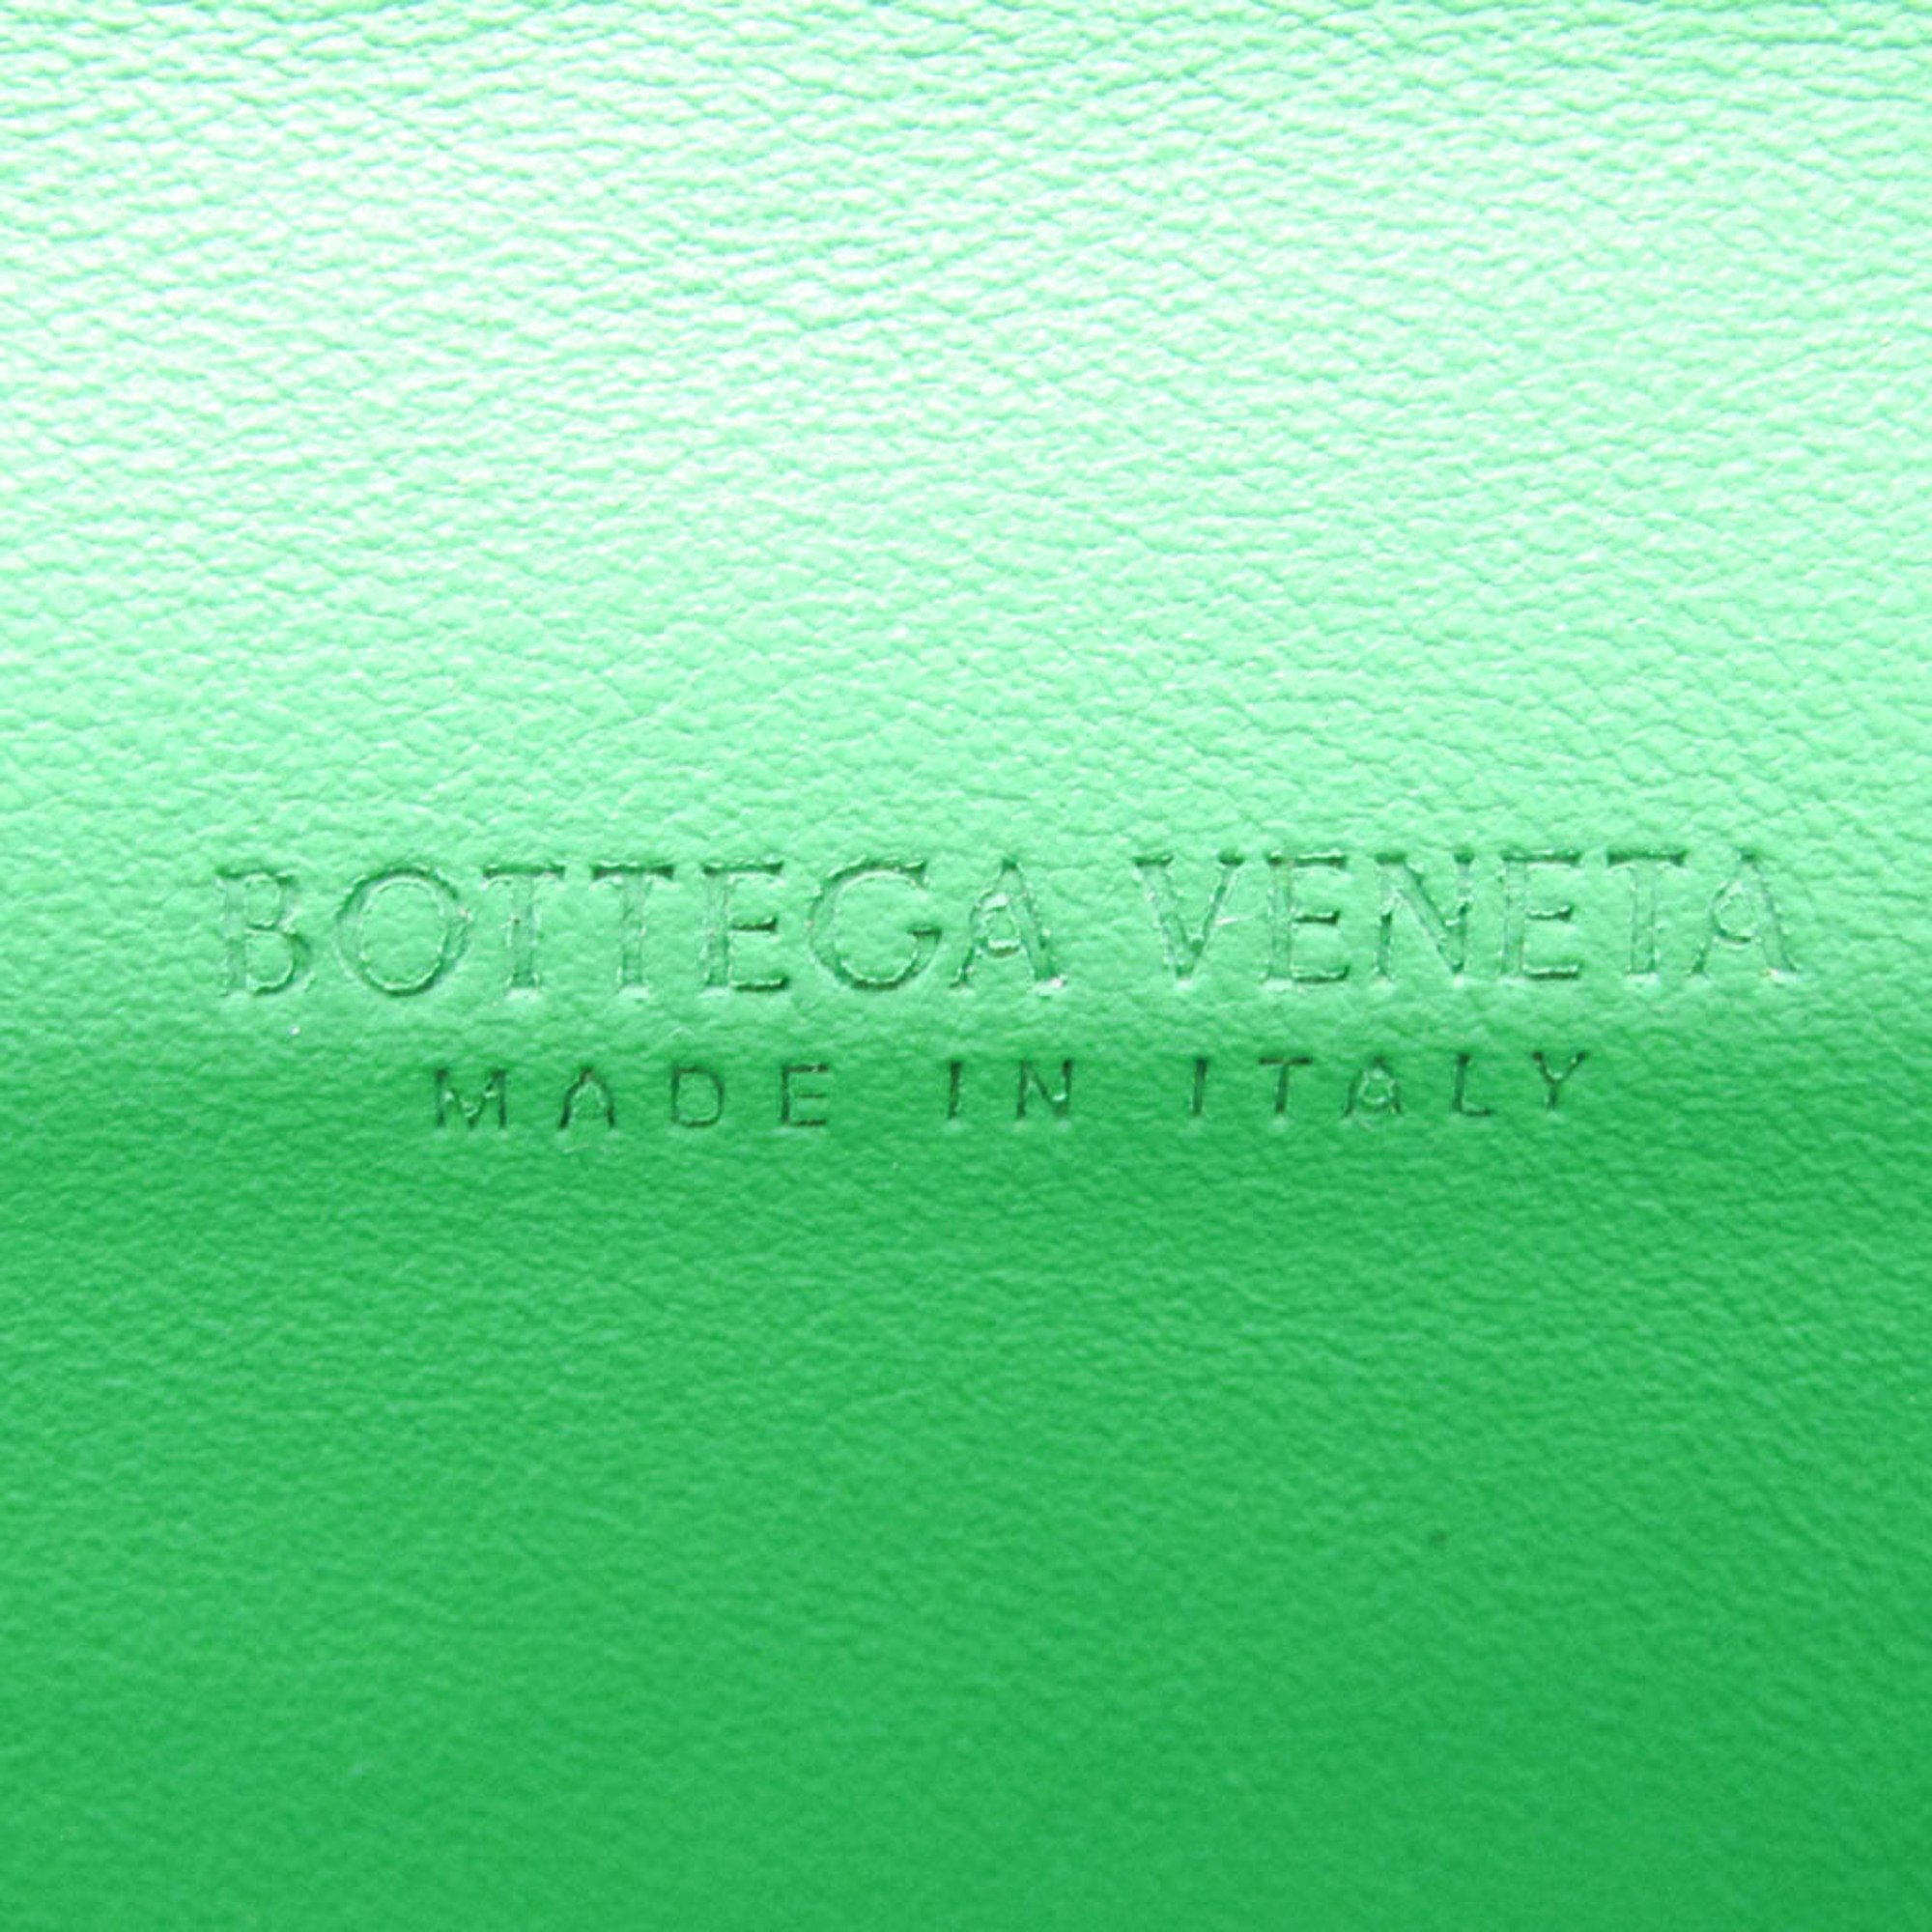 ボッテガ・ヴェネタ(Bottega Veneta) イントレチャート 591365 メンズ,レディース レザー 長財布（二つ折り） ブラック,グリーン